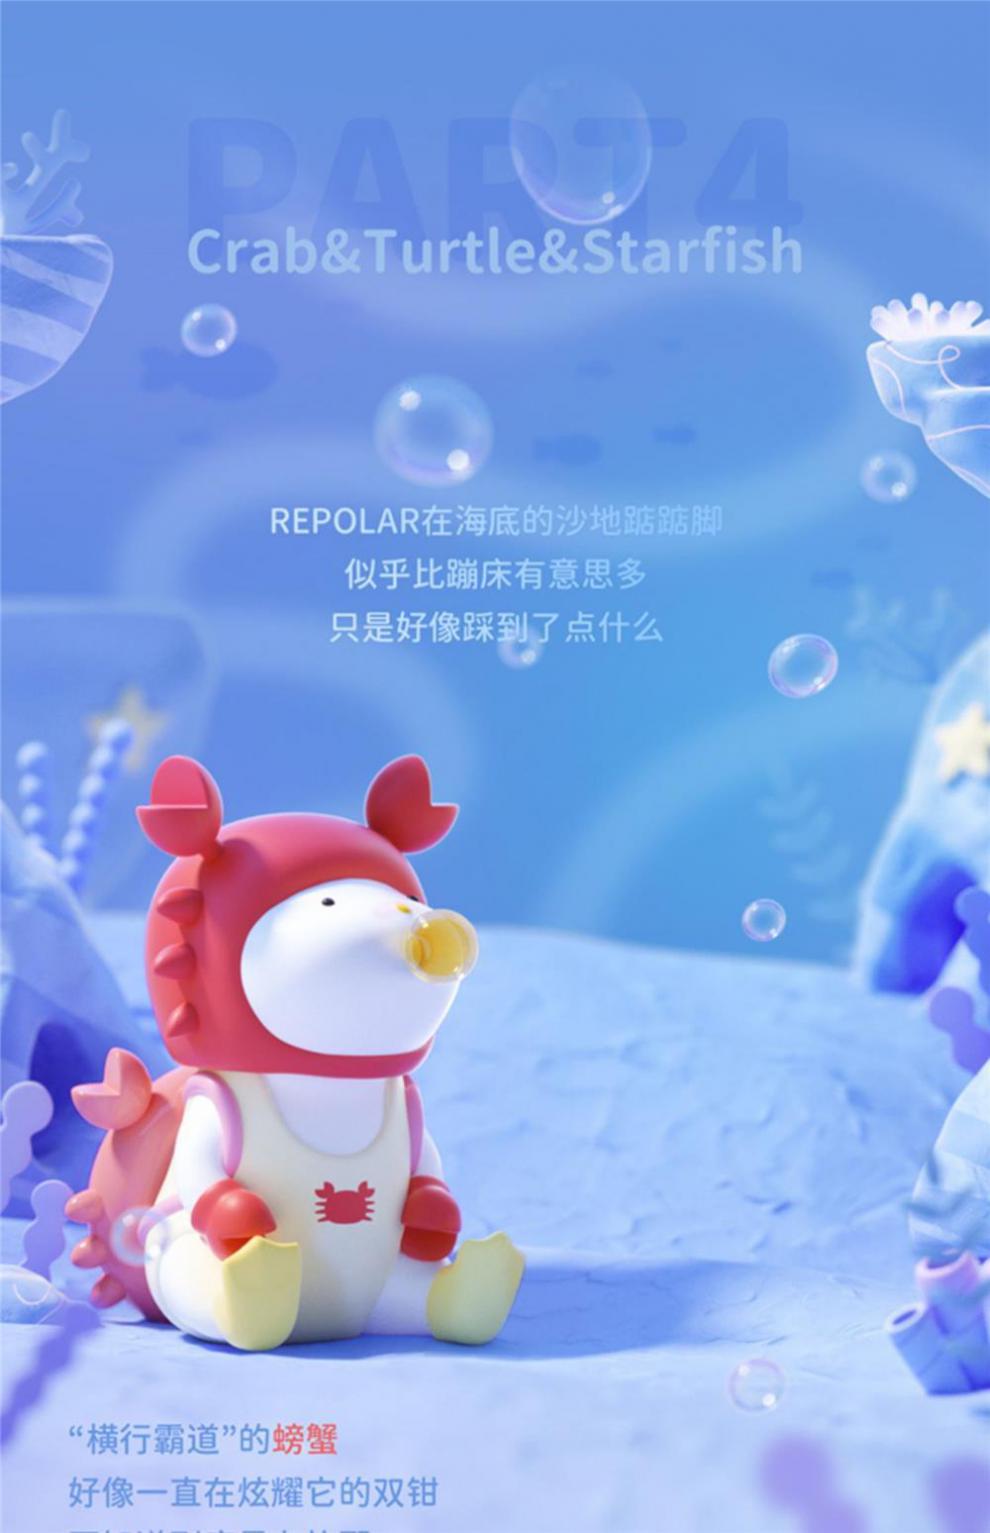 海洋生物盲盒repolar系列盲盒寻找独角兽吐泡泡潮玩礼物企鹅确认款